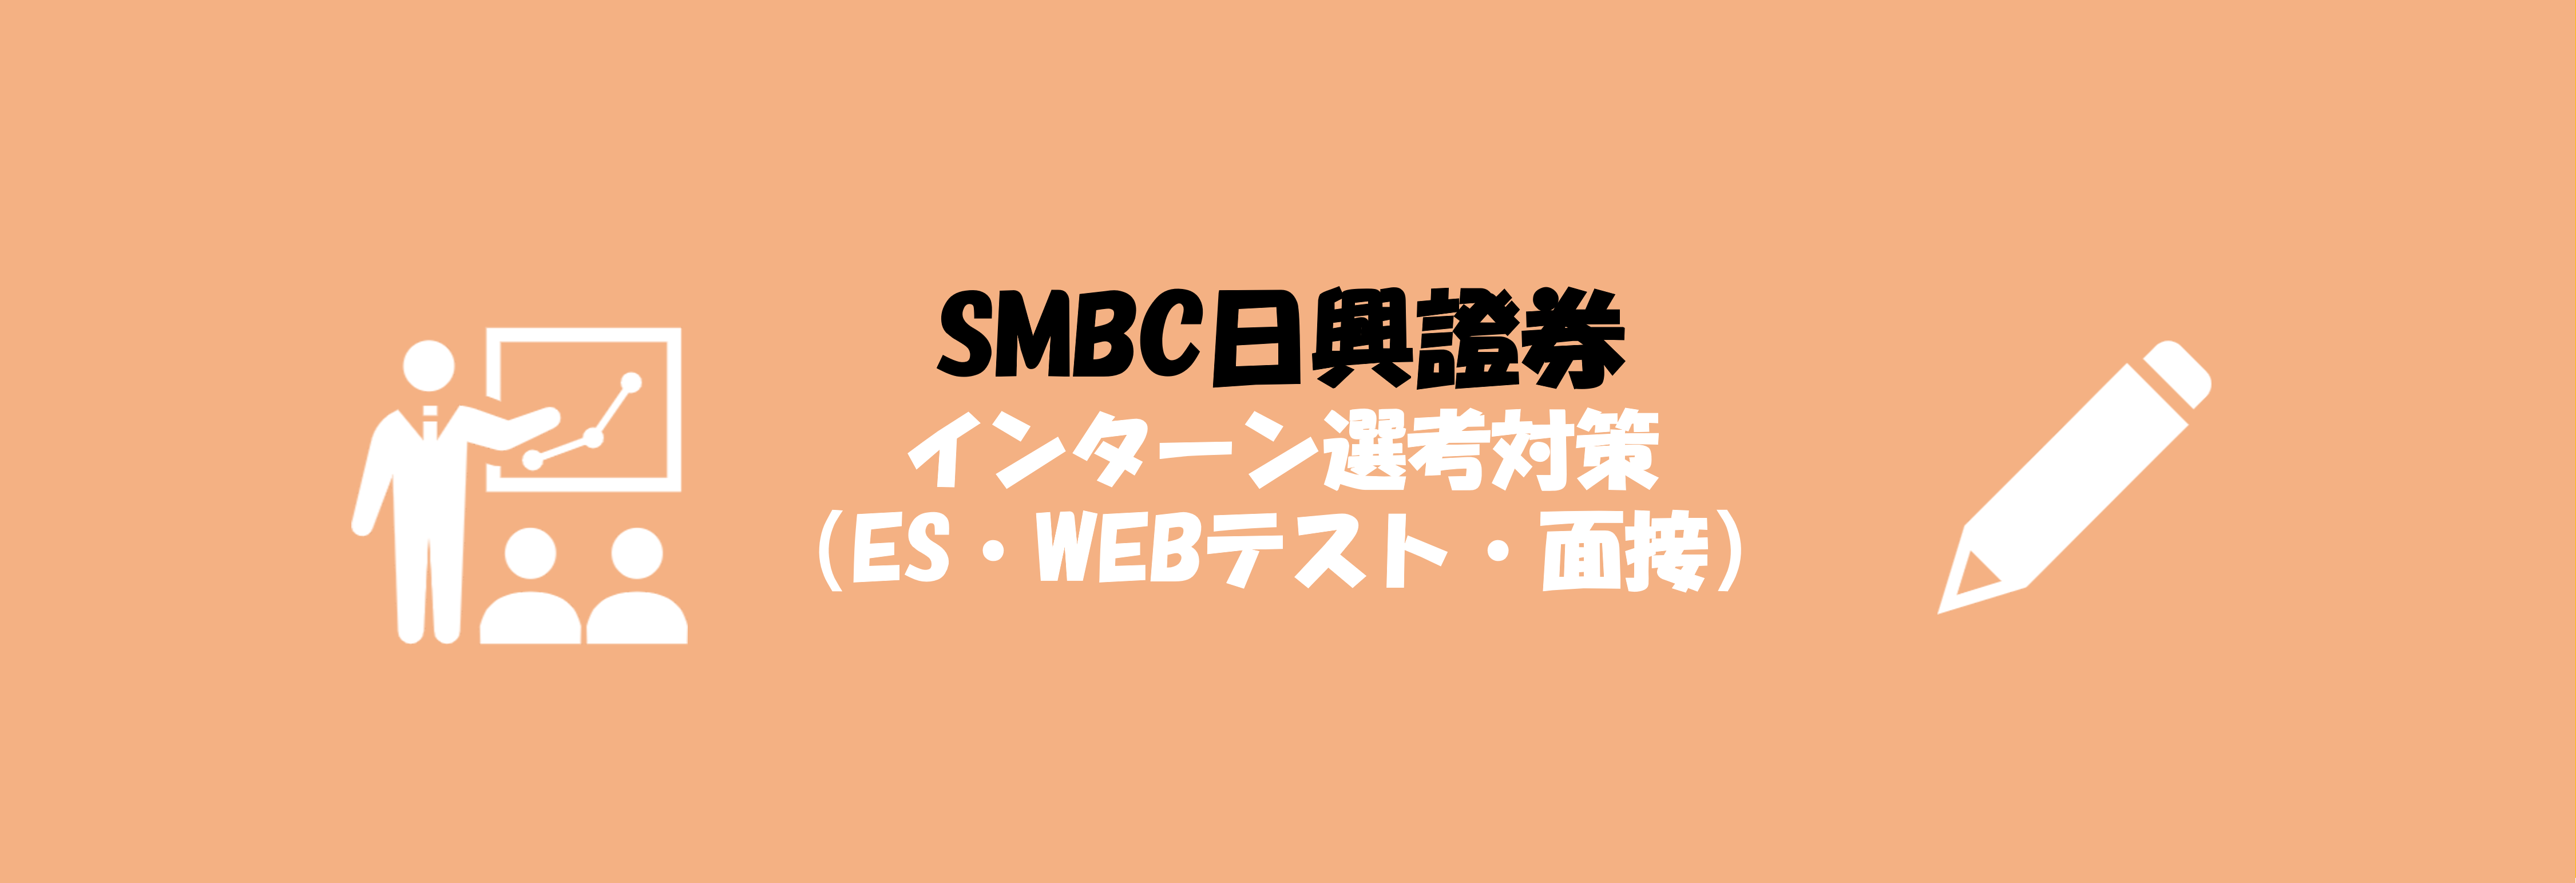 Smbc日興証券のインターン選考 Es Webテスト 面接 対策 就職活動支援サイトunistyle